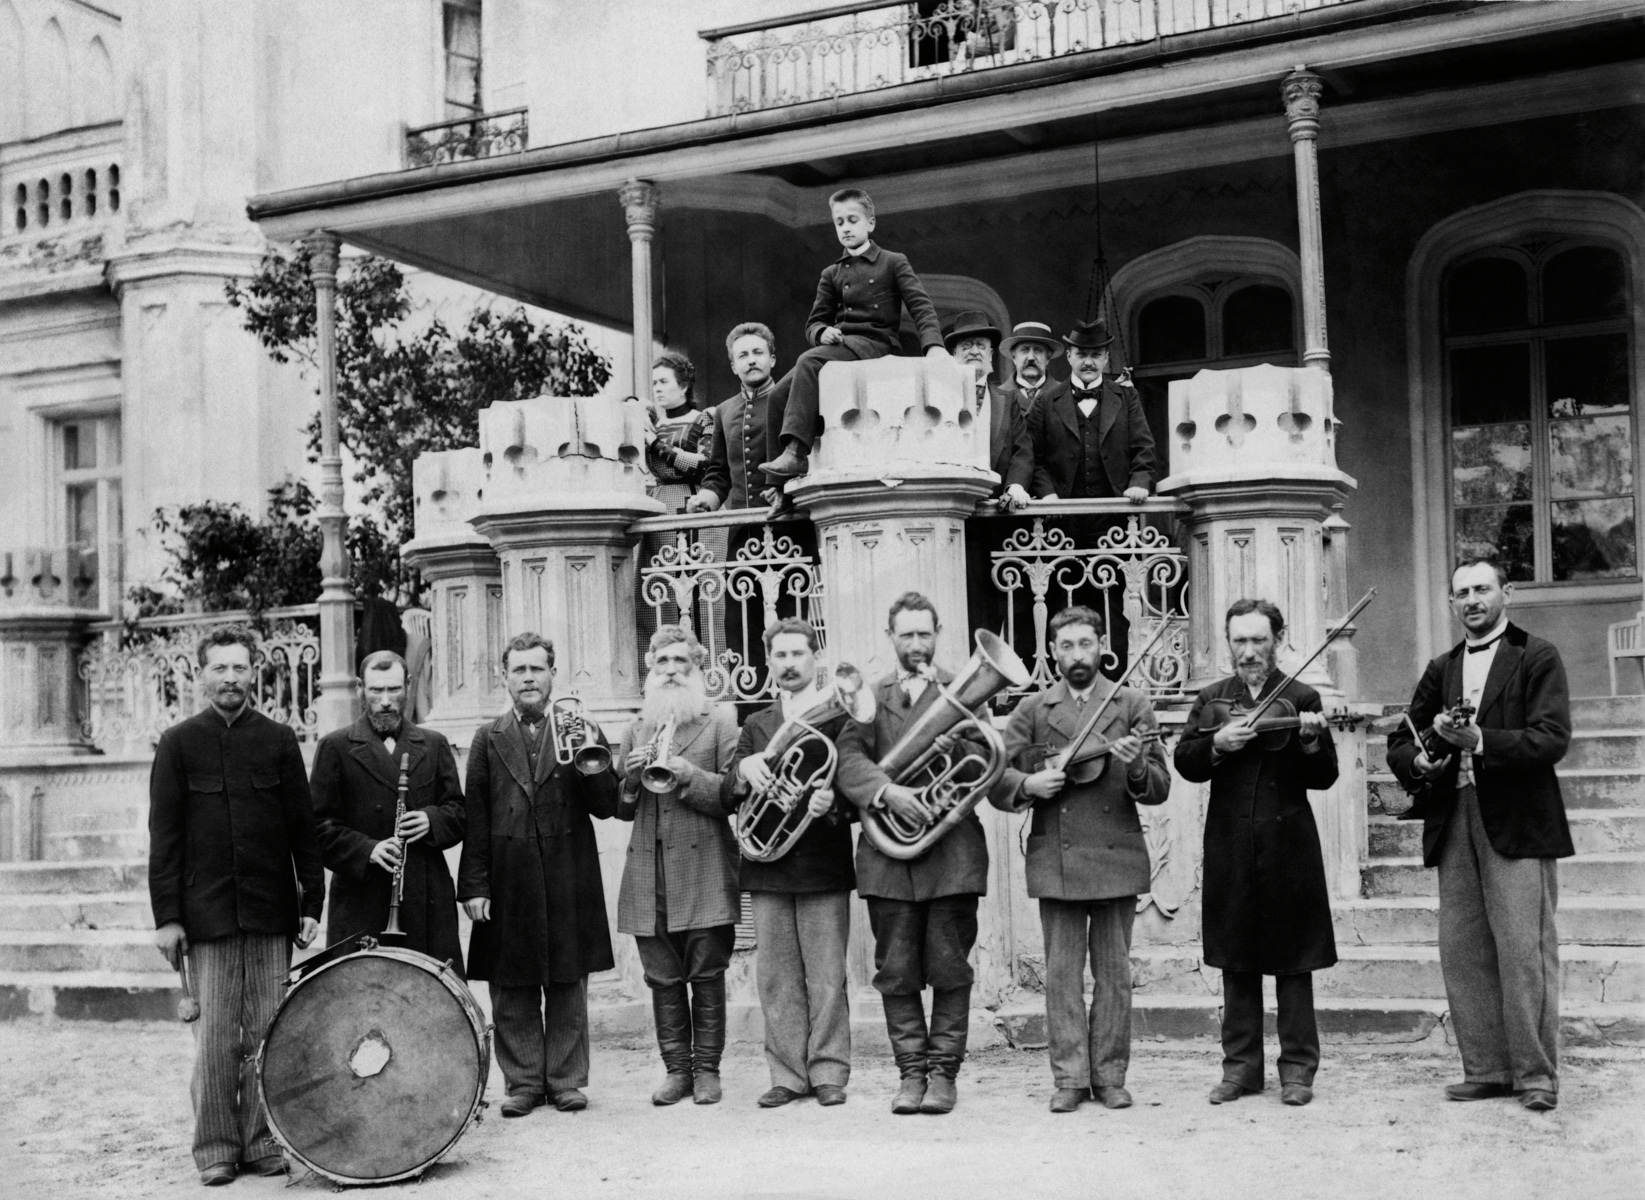 Muzykanci Wiłkomierscy, Pałac w Wojtkuszkach od strony ogrodu, 8 maja 1898. Zbiory Narodowego Muzeum Sztuki im. M. K. Ciurlionisa w Kownie.